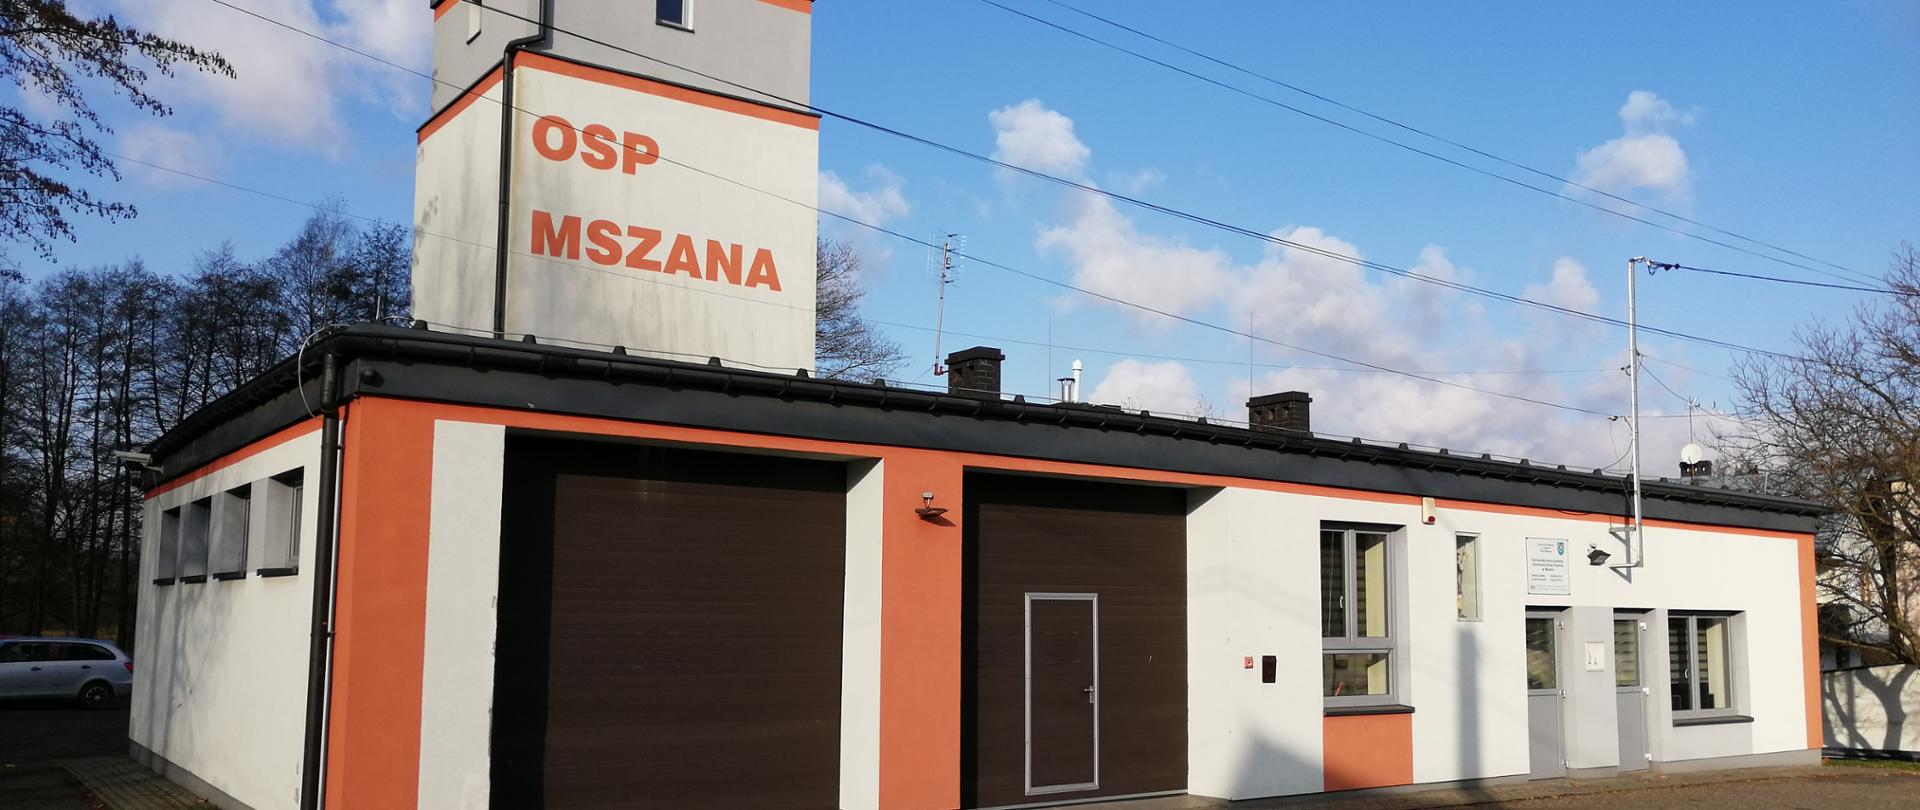 Zdjęcie prezentuje budynek jednostki OSP Mszana